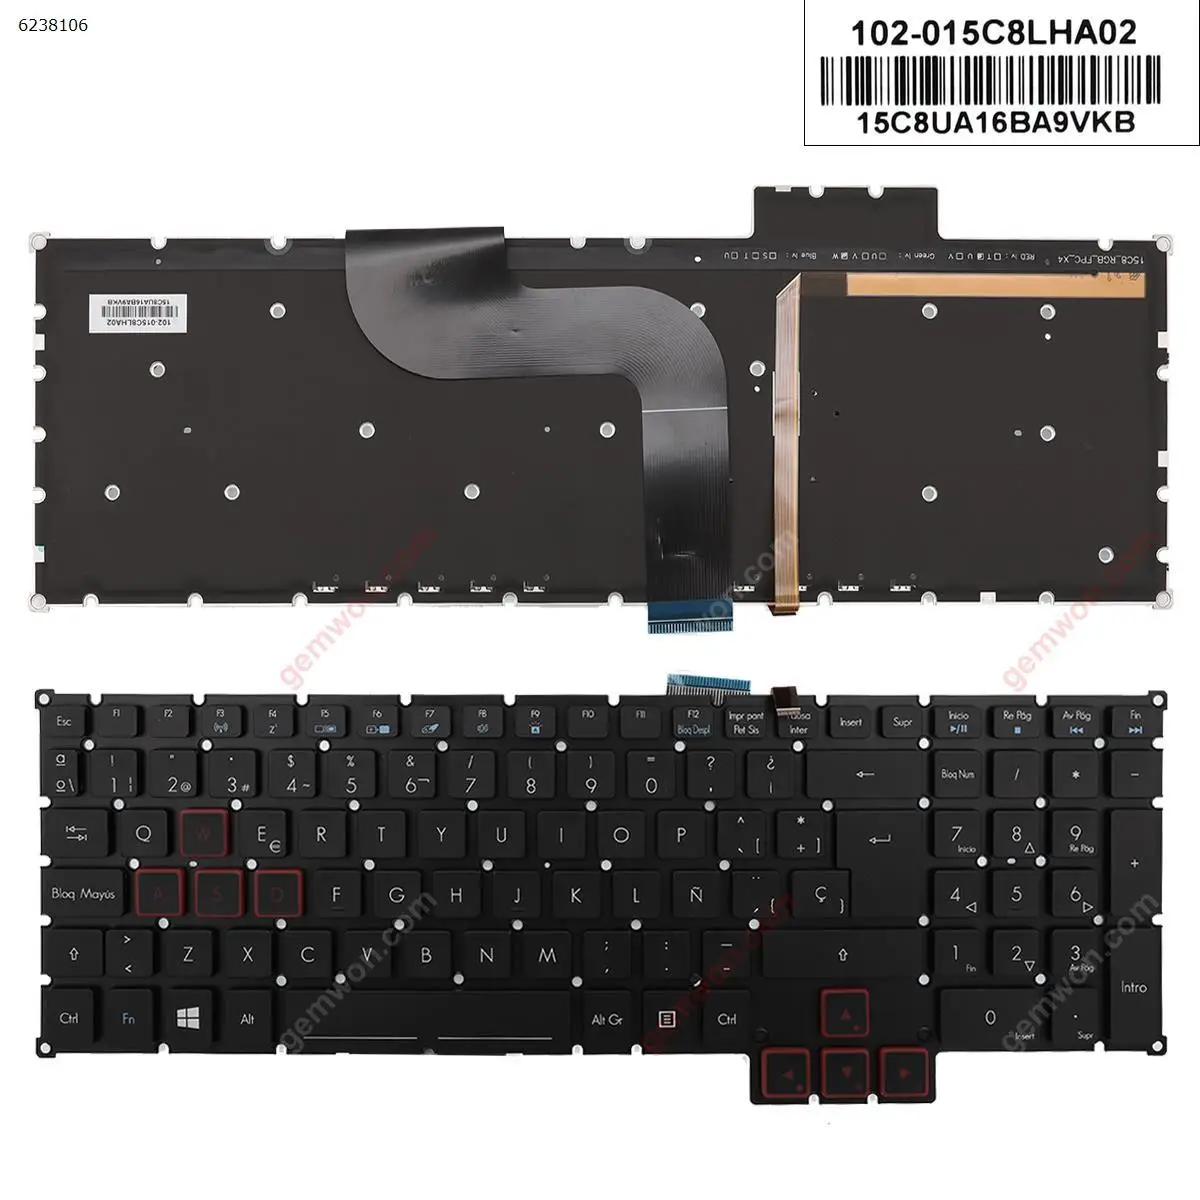 Original Spanish Keyboard for Acer Predator g9-591 g9-591g g9-591r g5-793 g9-791 g9-791g Black Without Frame Backlit